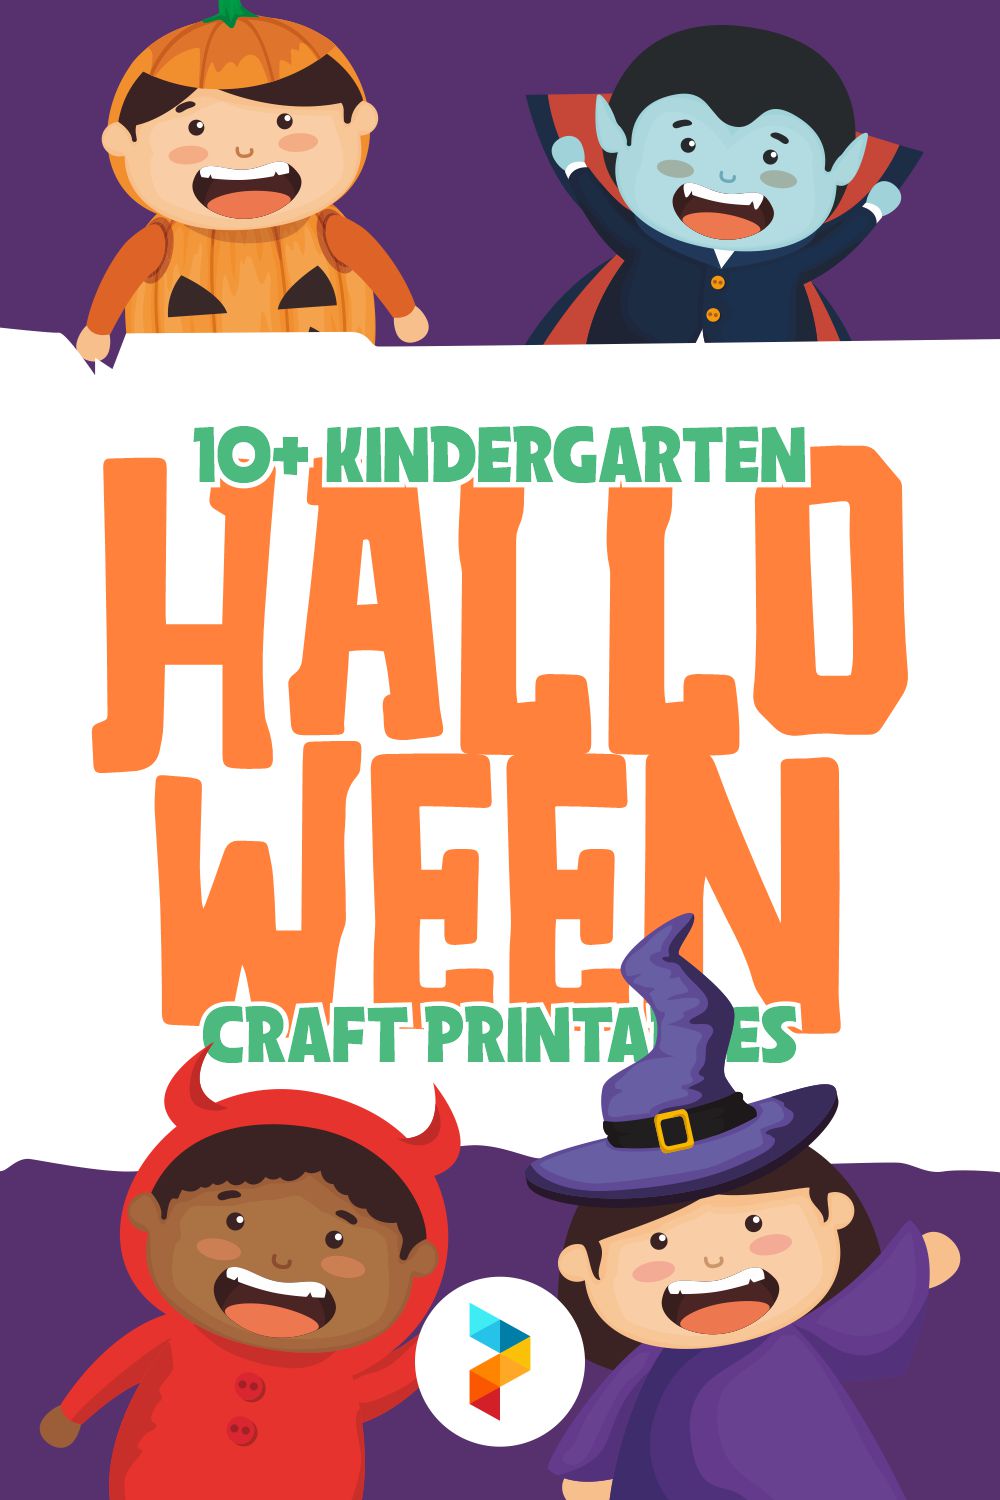 Kindergarten Halloween Craft Printables